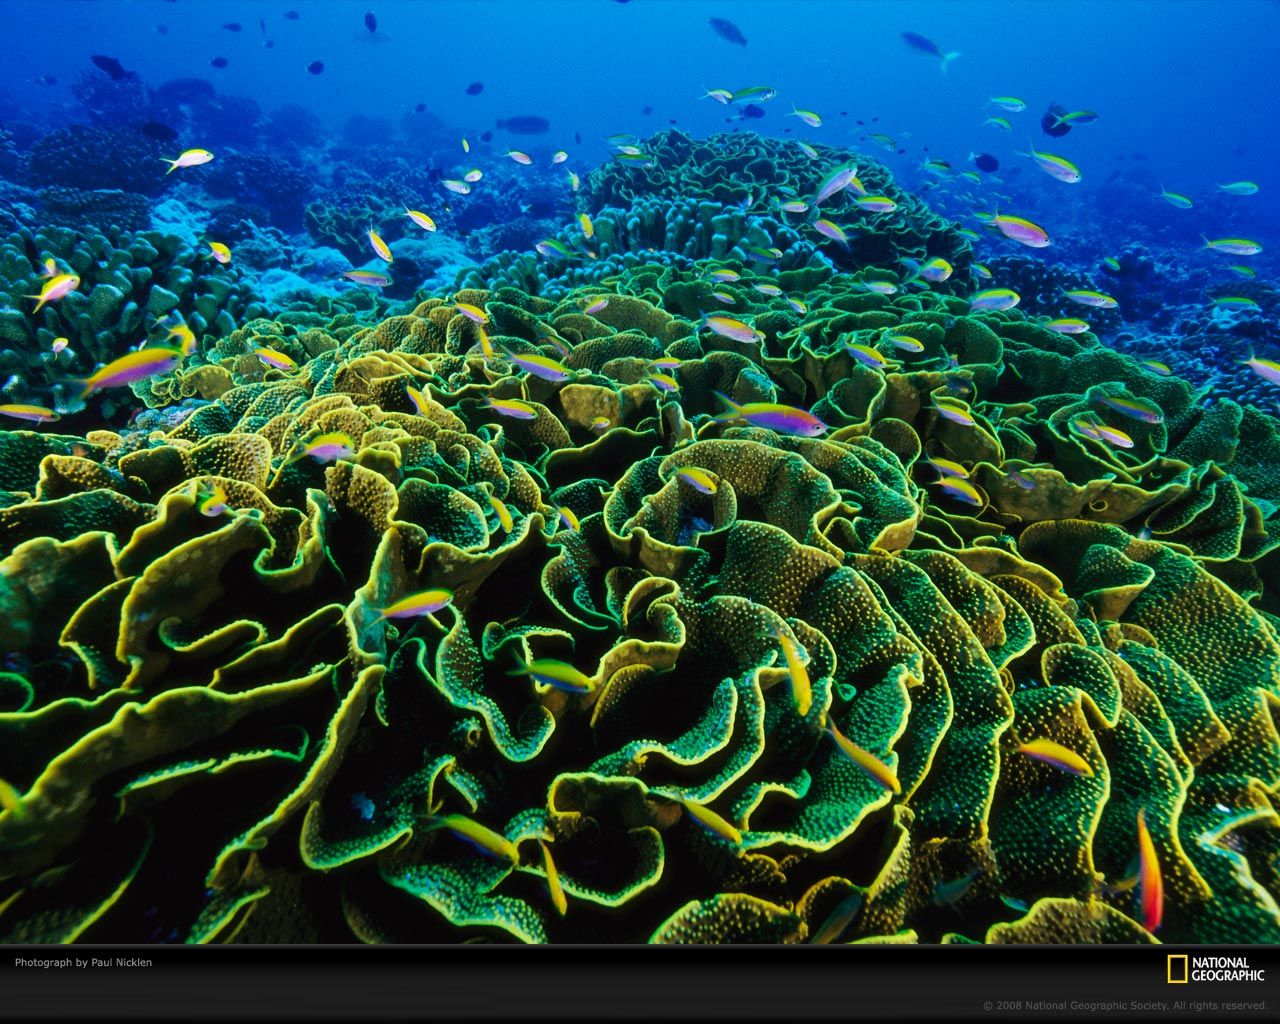 שונית אלמוגים